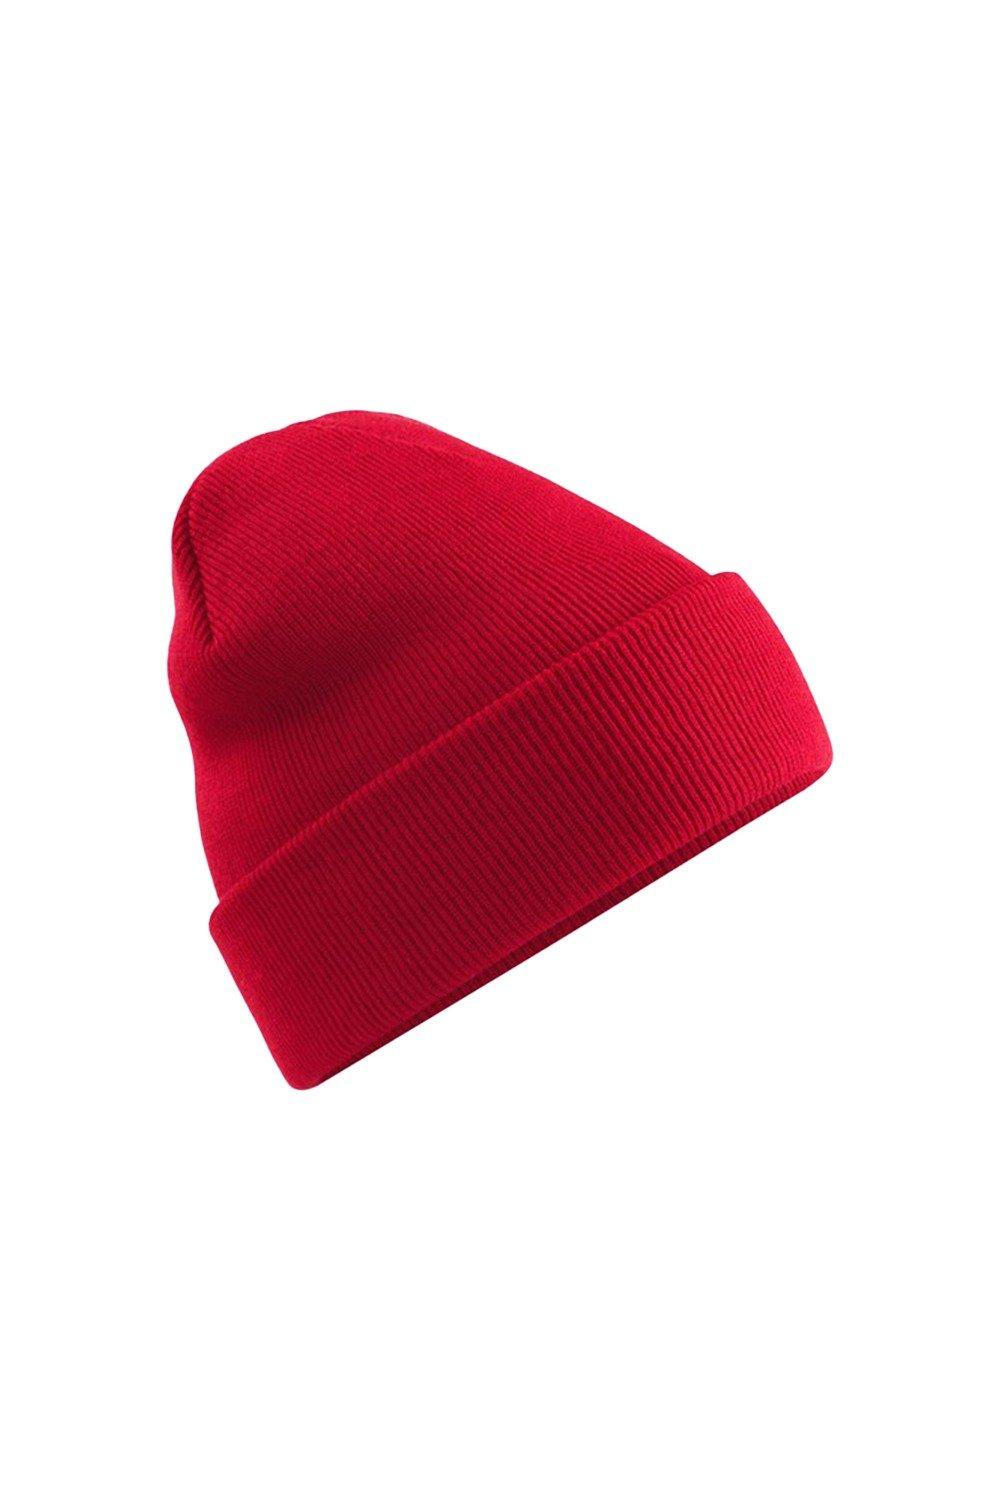 Оригинальная шапка Polylana с манжетами Beechfield, красный оригинальная зимняя шапка бини с манжетами beechfield красный